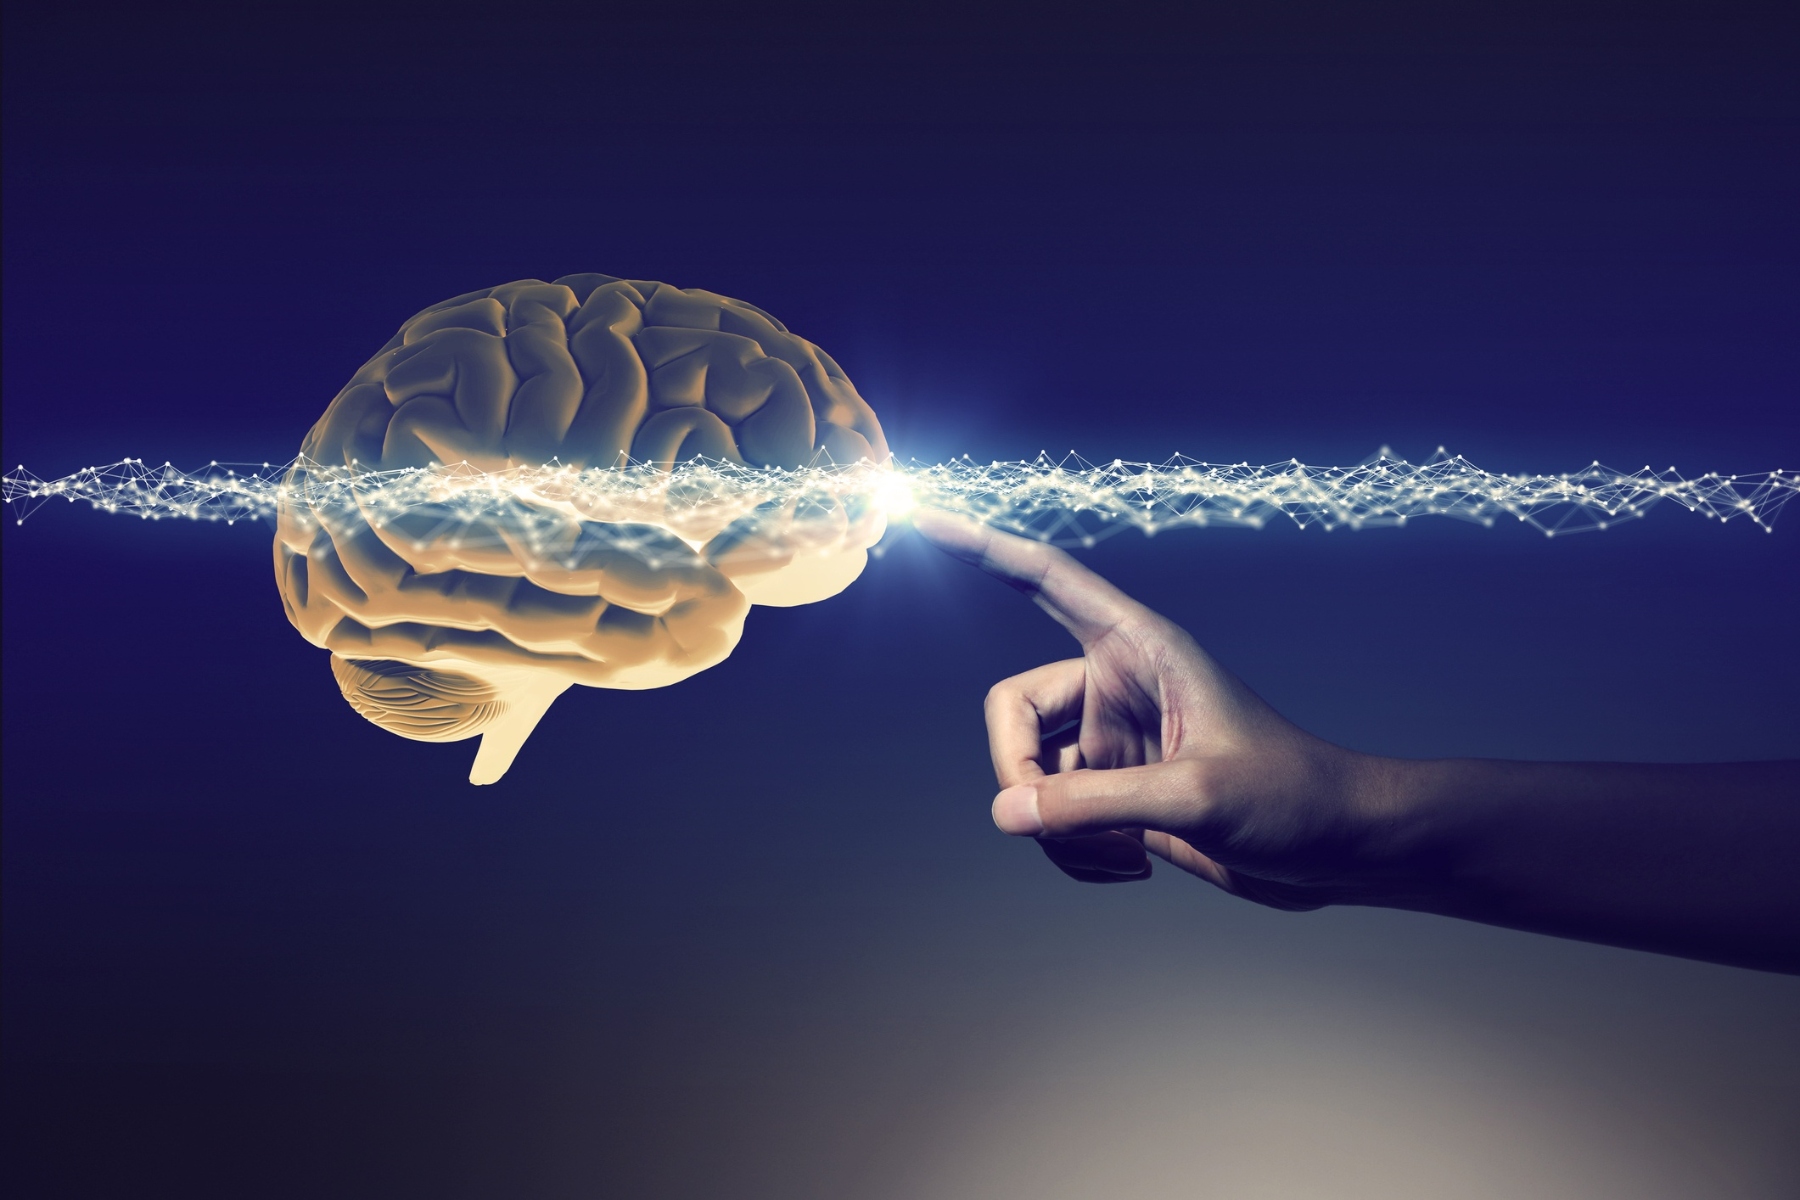 Εμφύτευμα εγκεφάλου μπορεί να επιτρέψει την επικοινωνία μέσω σκέψεων